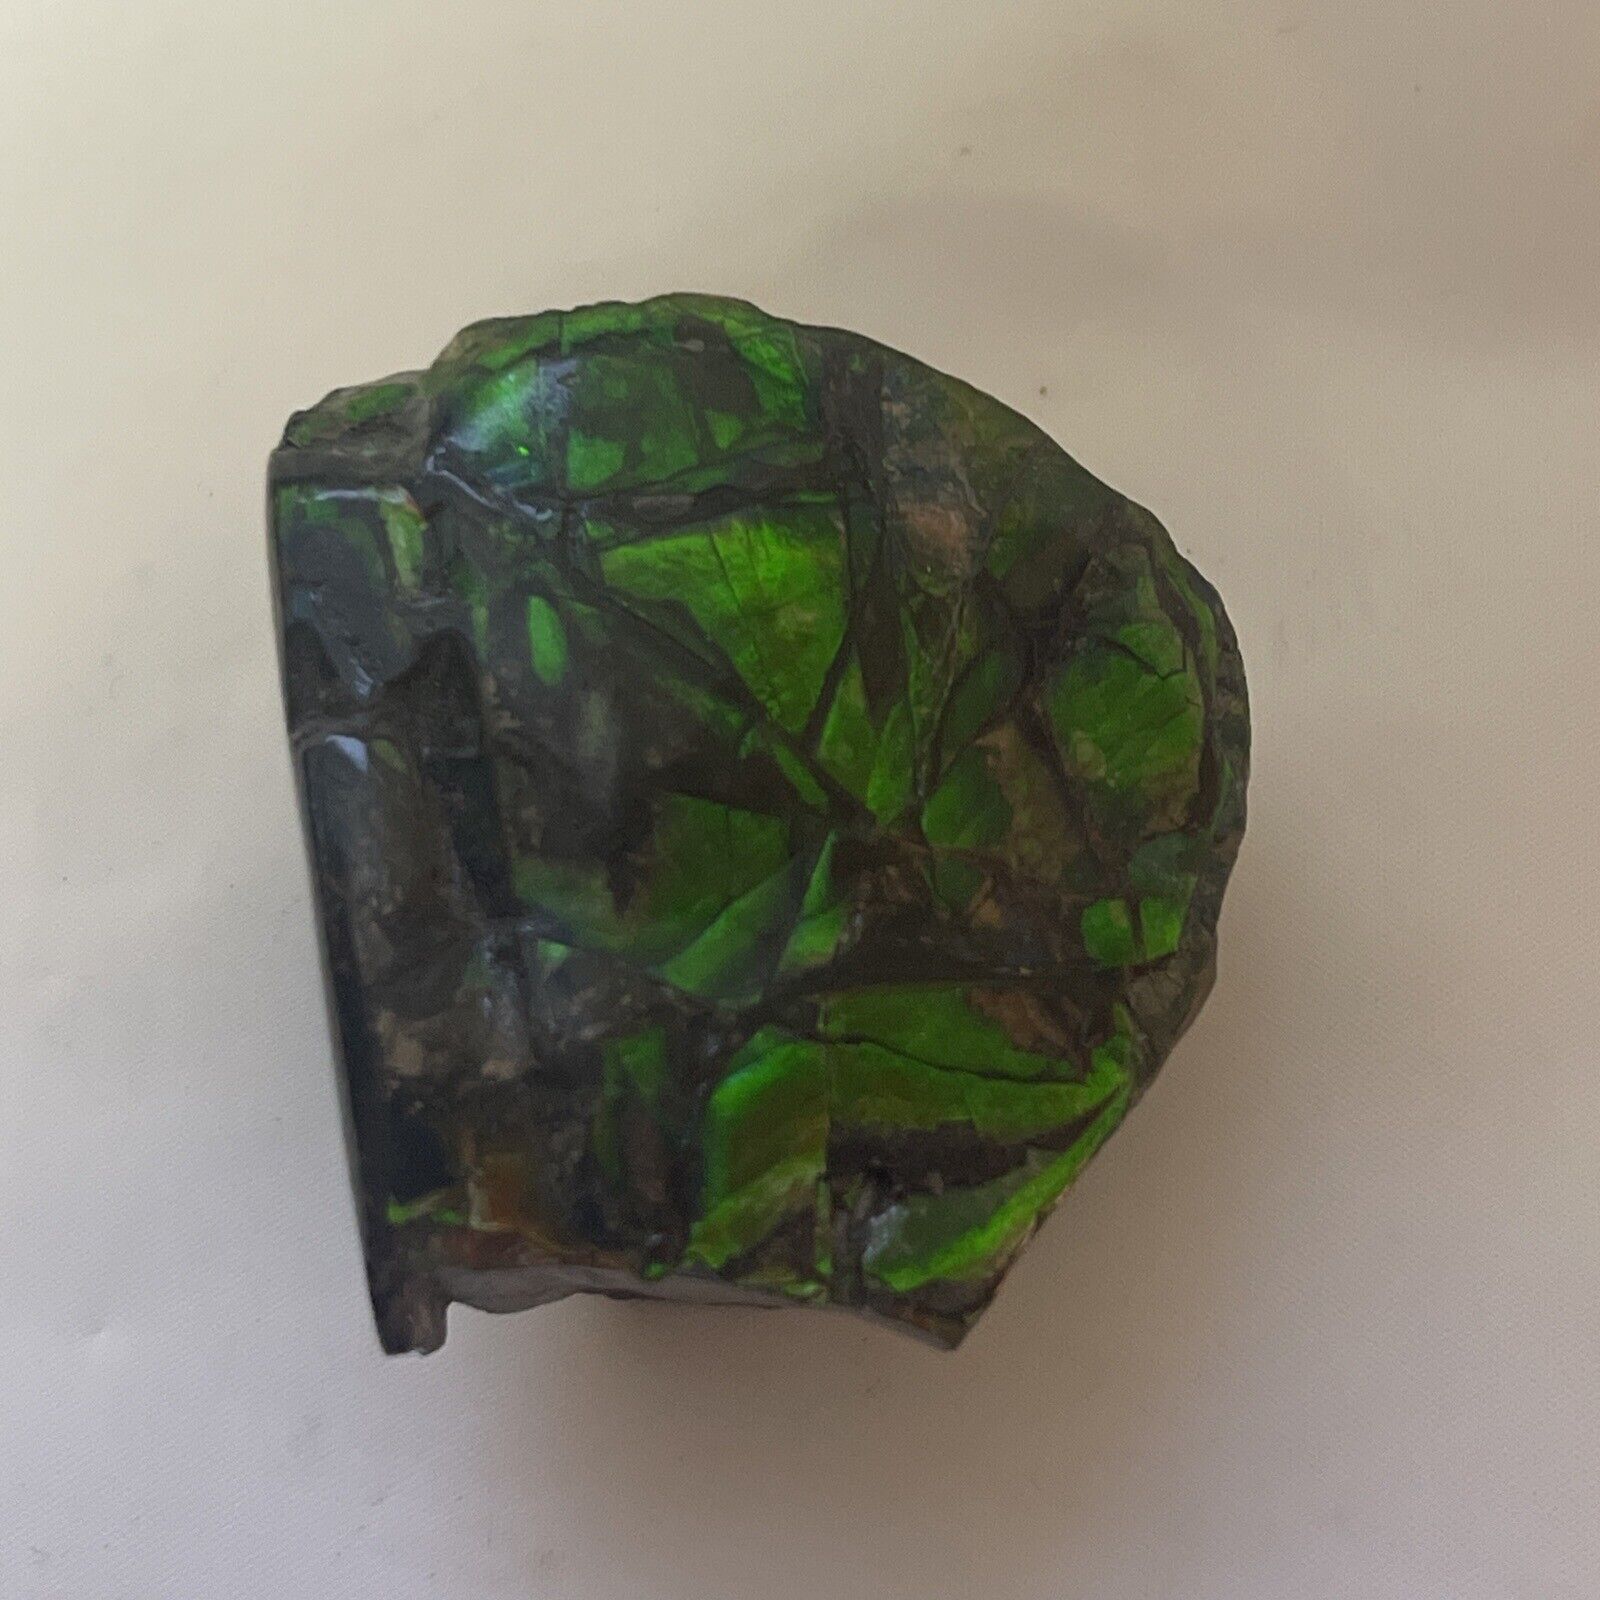 Stunning Vibrant Green Fossil Ammolite 50 mm x 50mm x 30 mm 110 g 